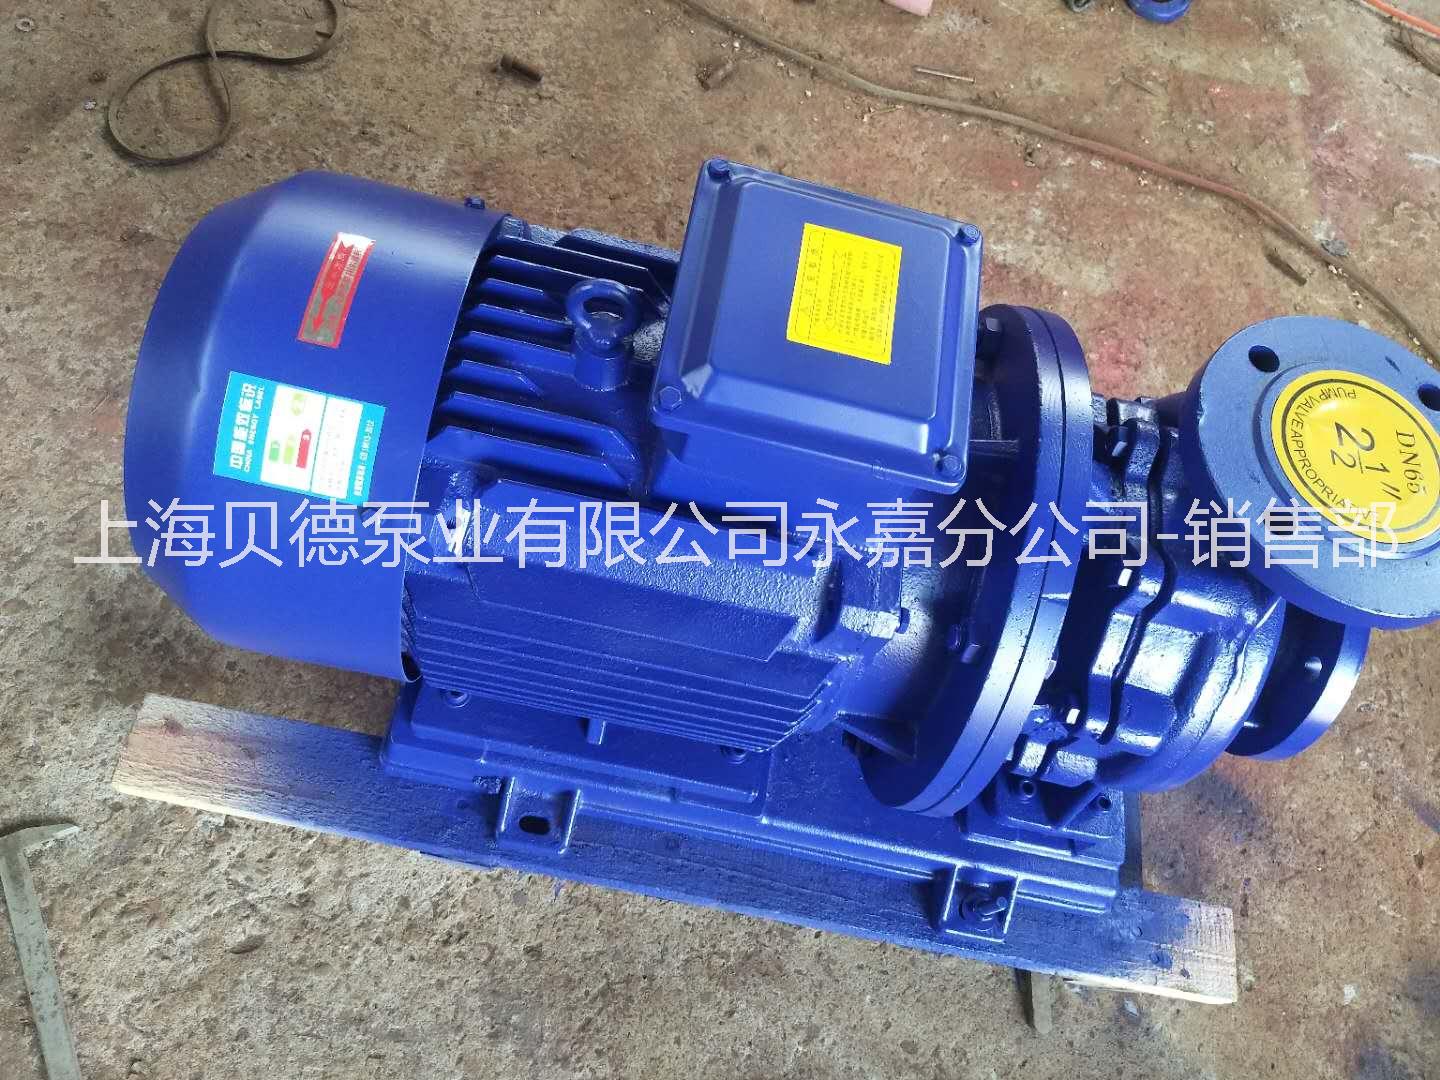 上海贝德泵业有限公司济宁办事处ISG32-200  卧式管道循环泵 自动单级单吸管道泵   ISW卧式管道泵图片